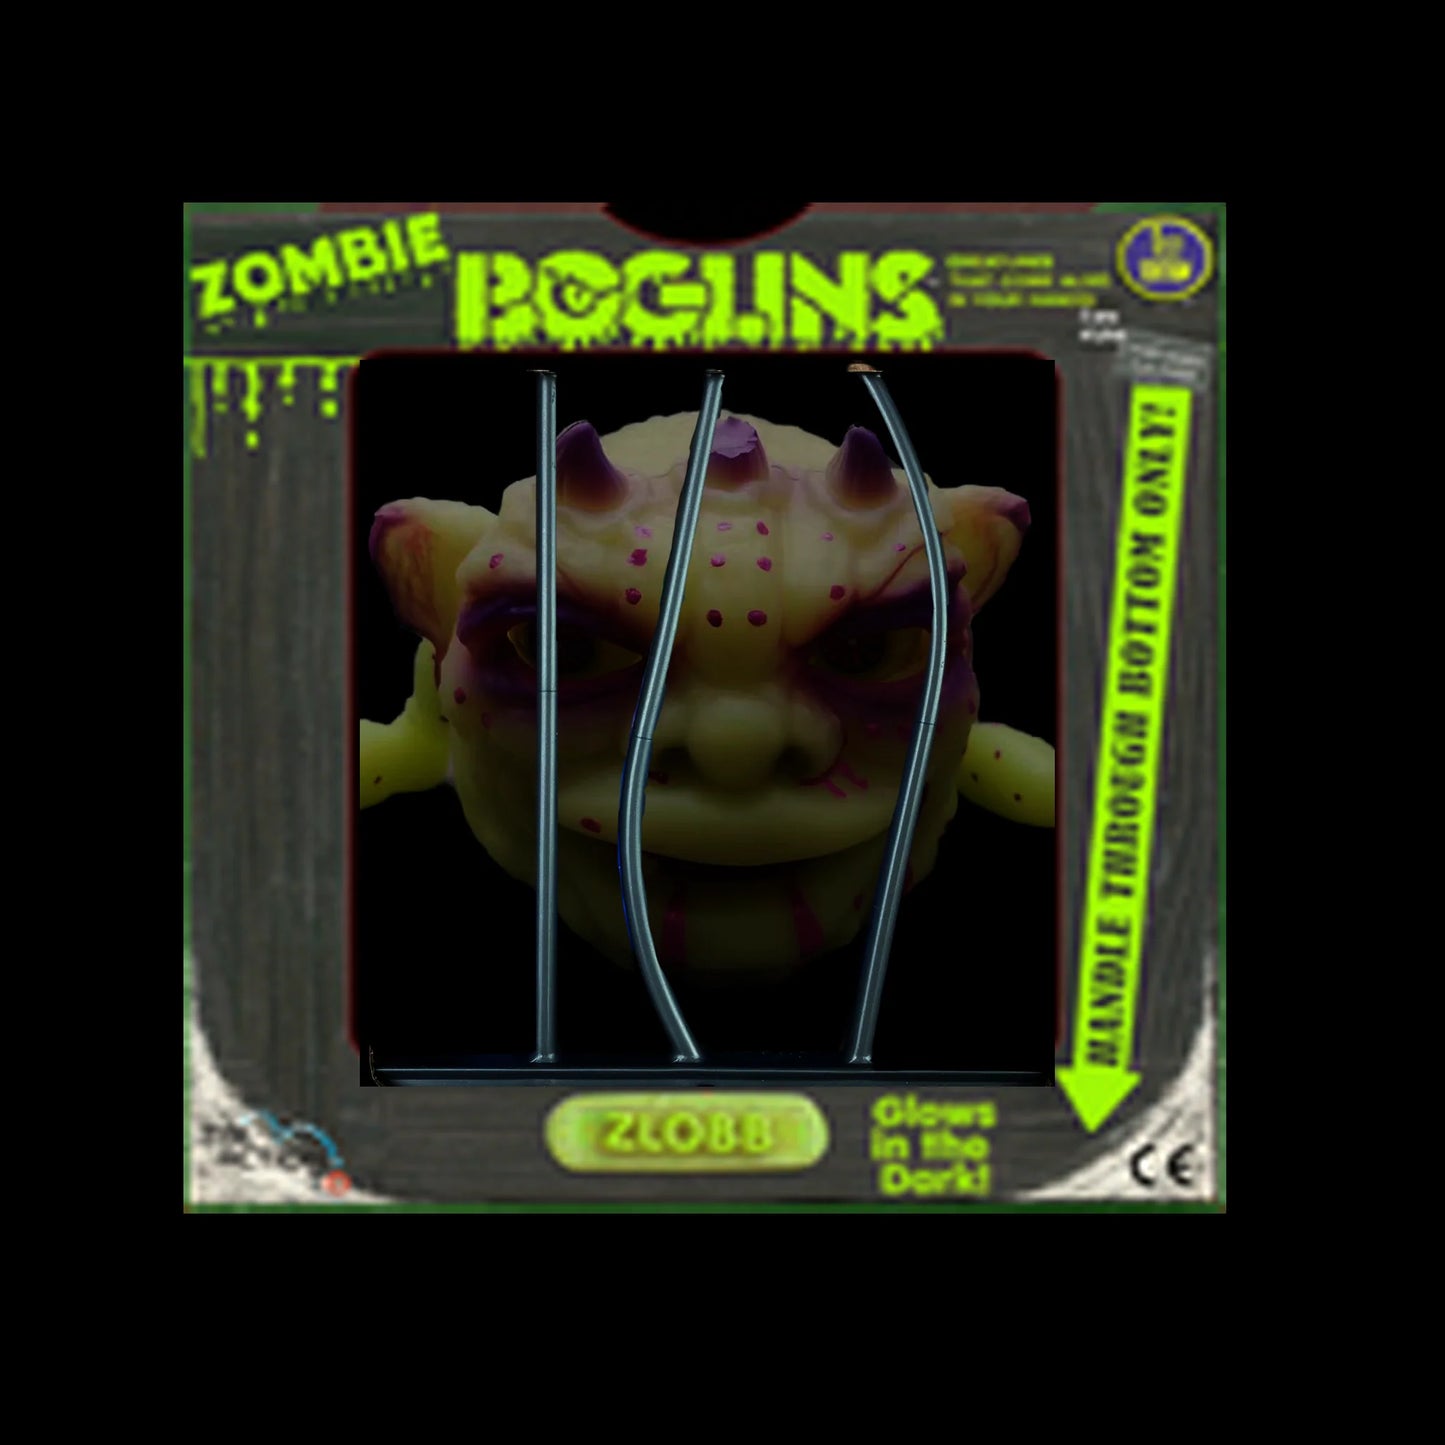 [LIMITED EDITION] Zombie Zlobb - Boglins